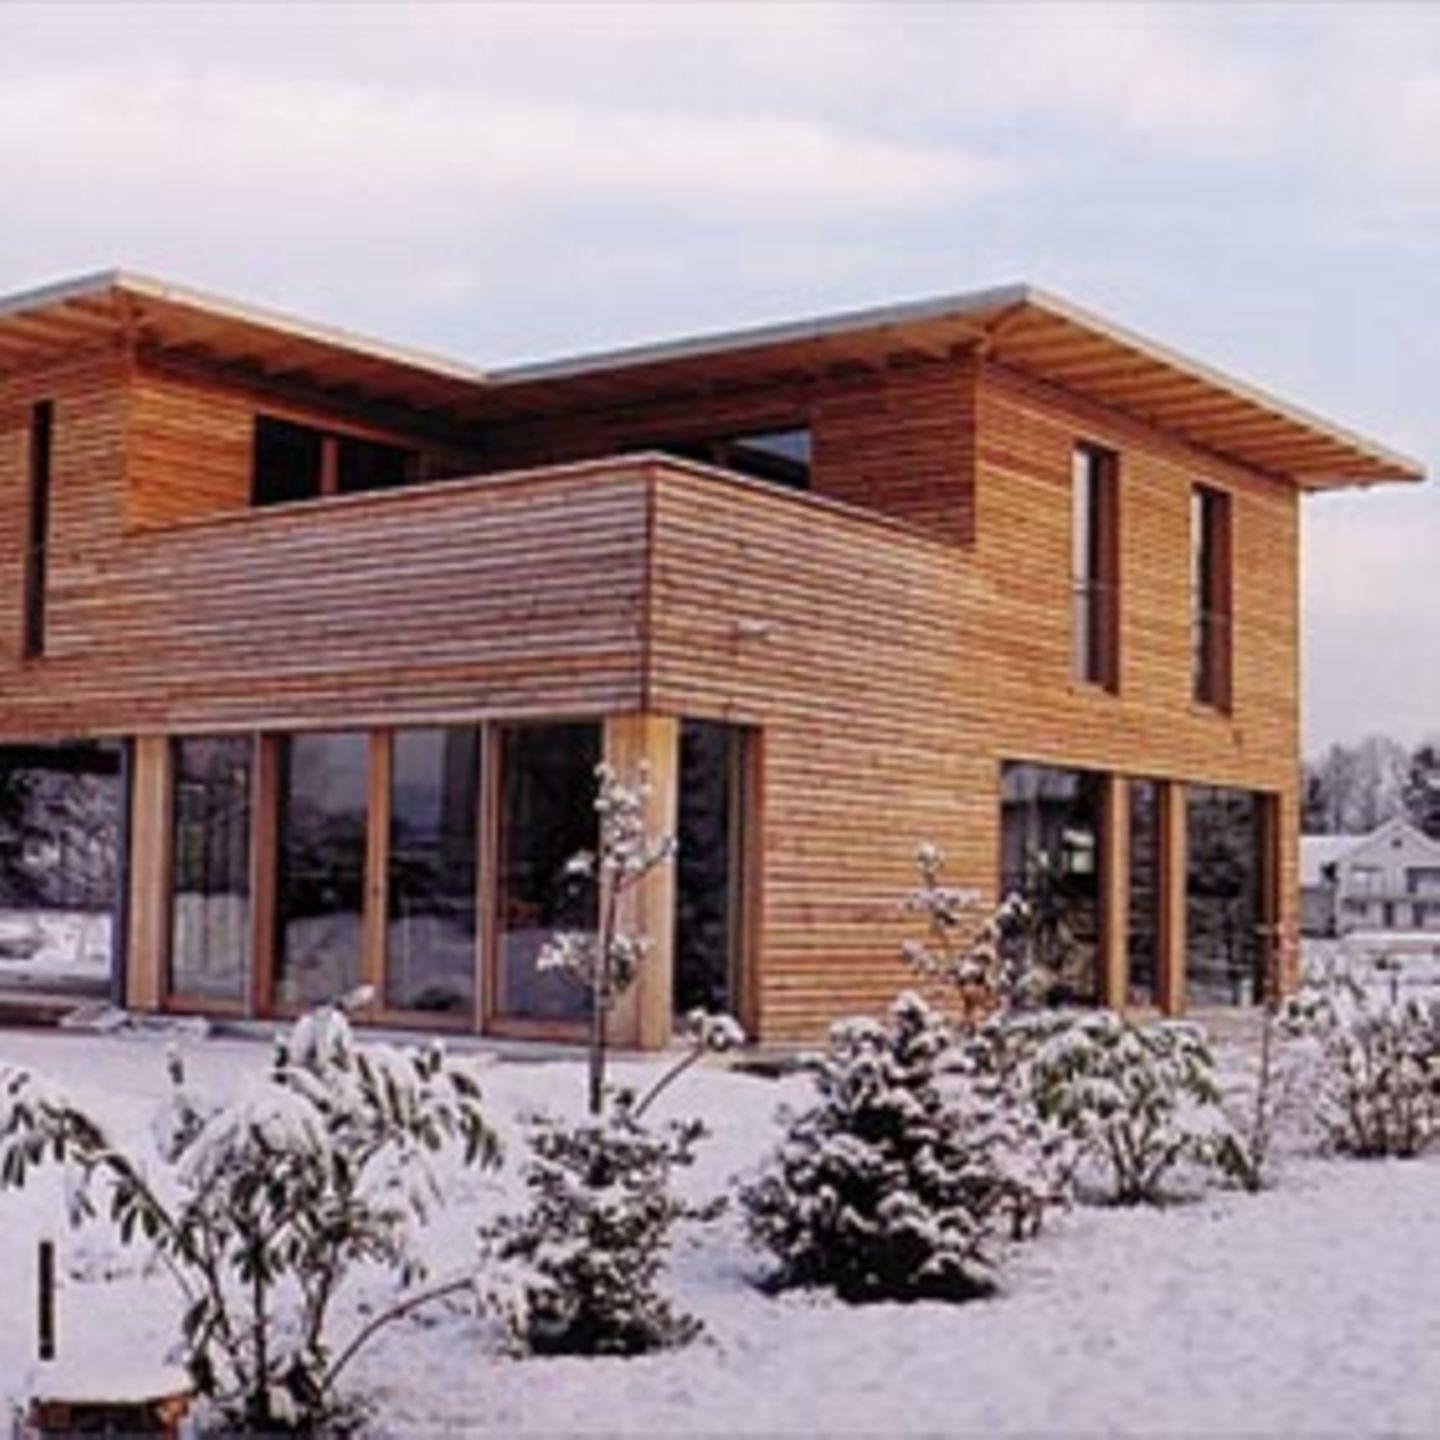 Das Holzmodulhaus in Dornbirn baute die Architektin baubiologisch einwandfrei mit Lehmputz und einer Dämmung aus Schafwolle. Sonst dominiert Holz – Lärche an der Fassade, Birnbaum und Ahorn im Inneren.